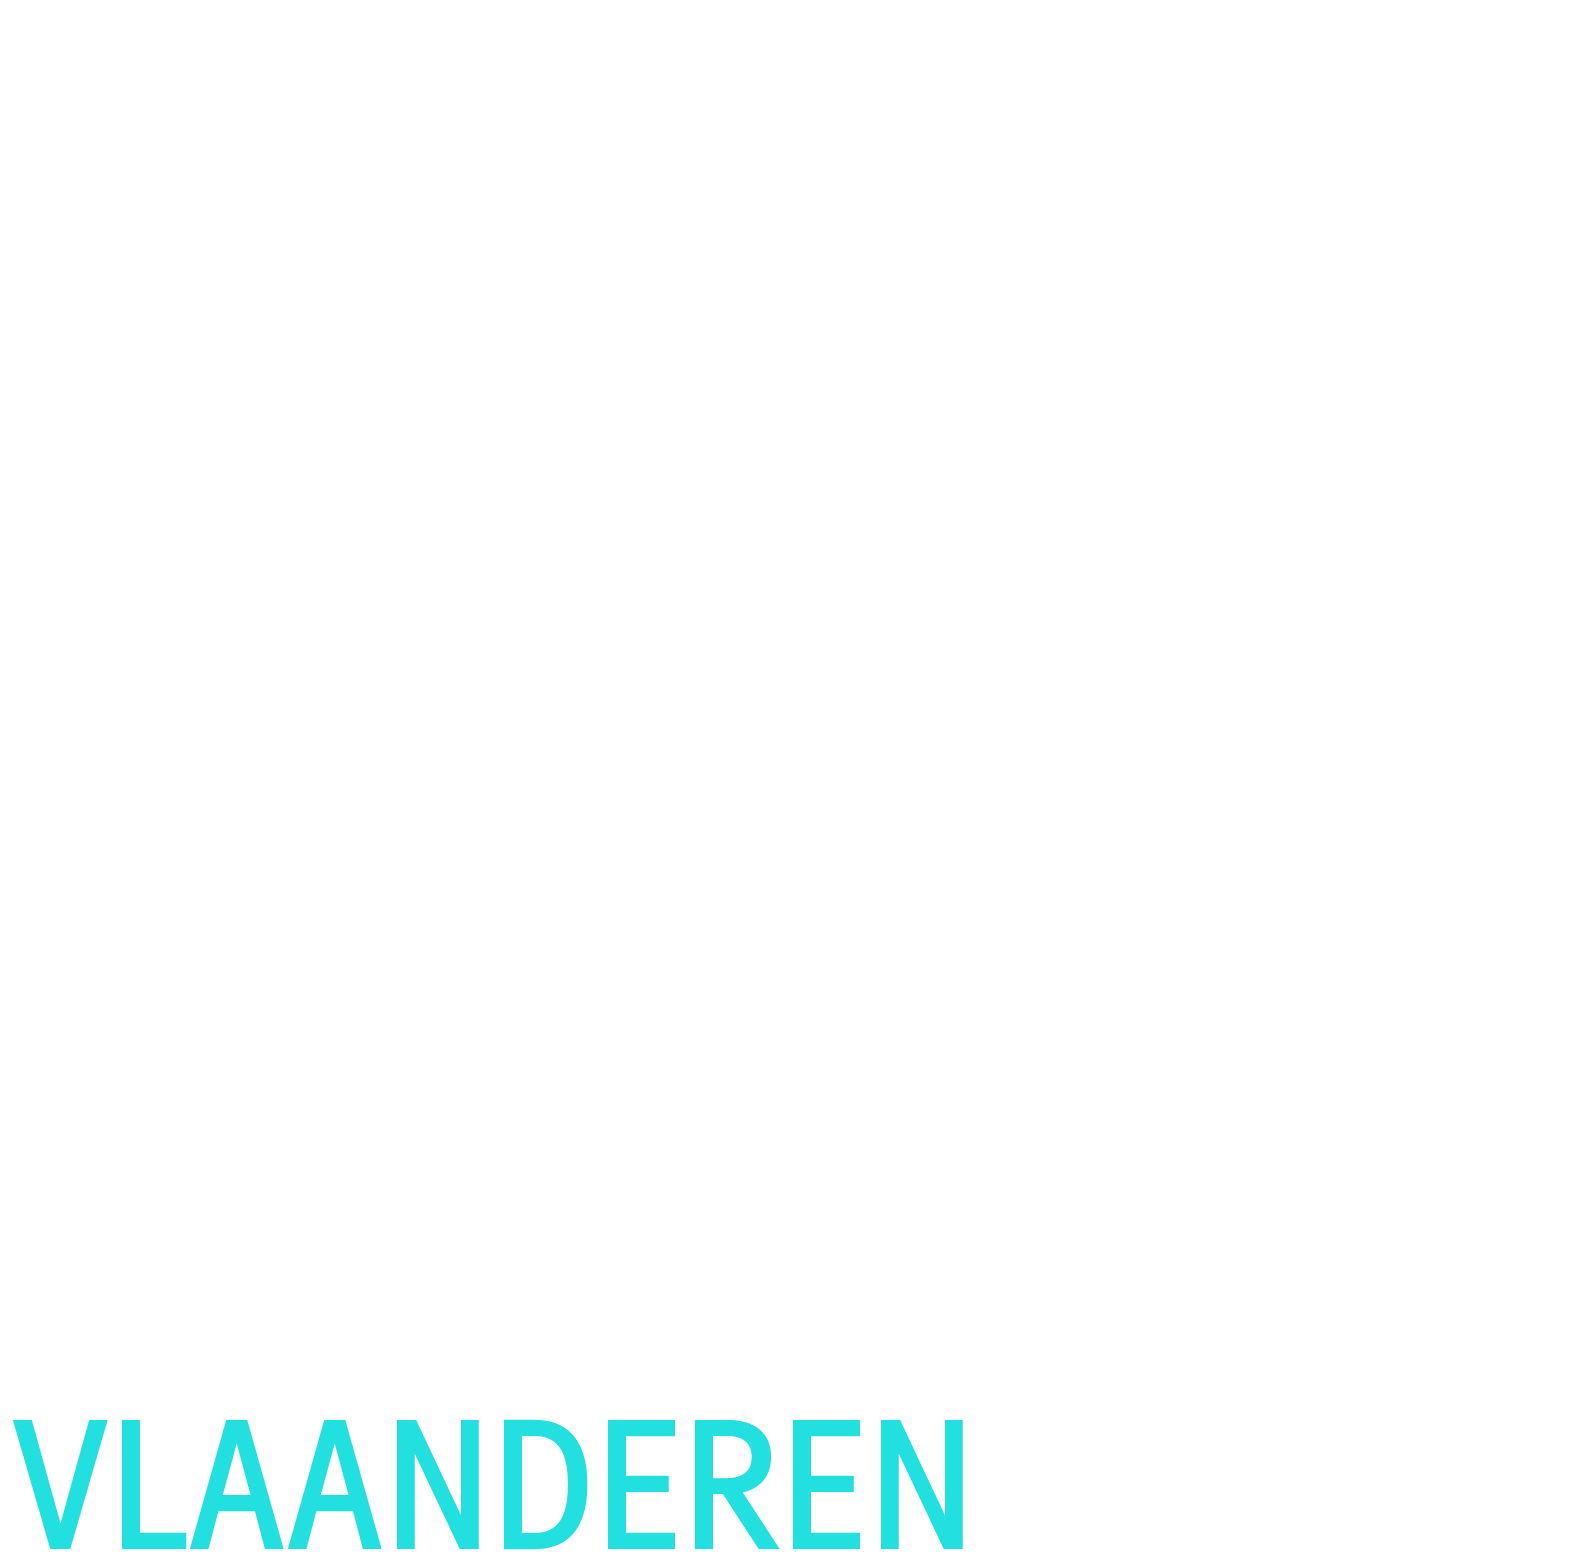 Embuild Vlaanderen